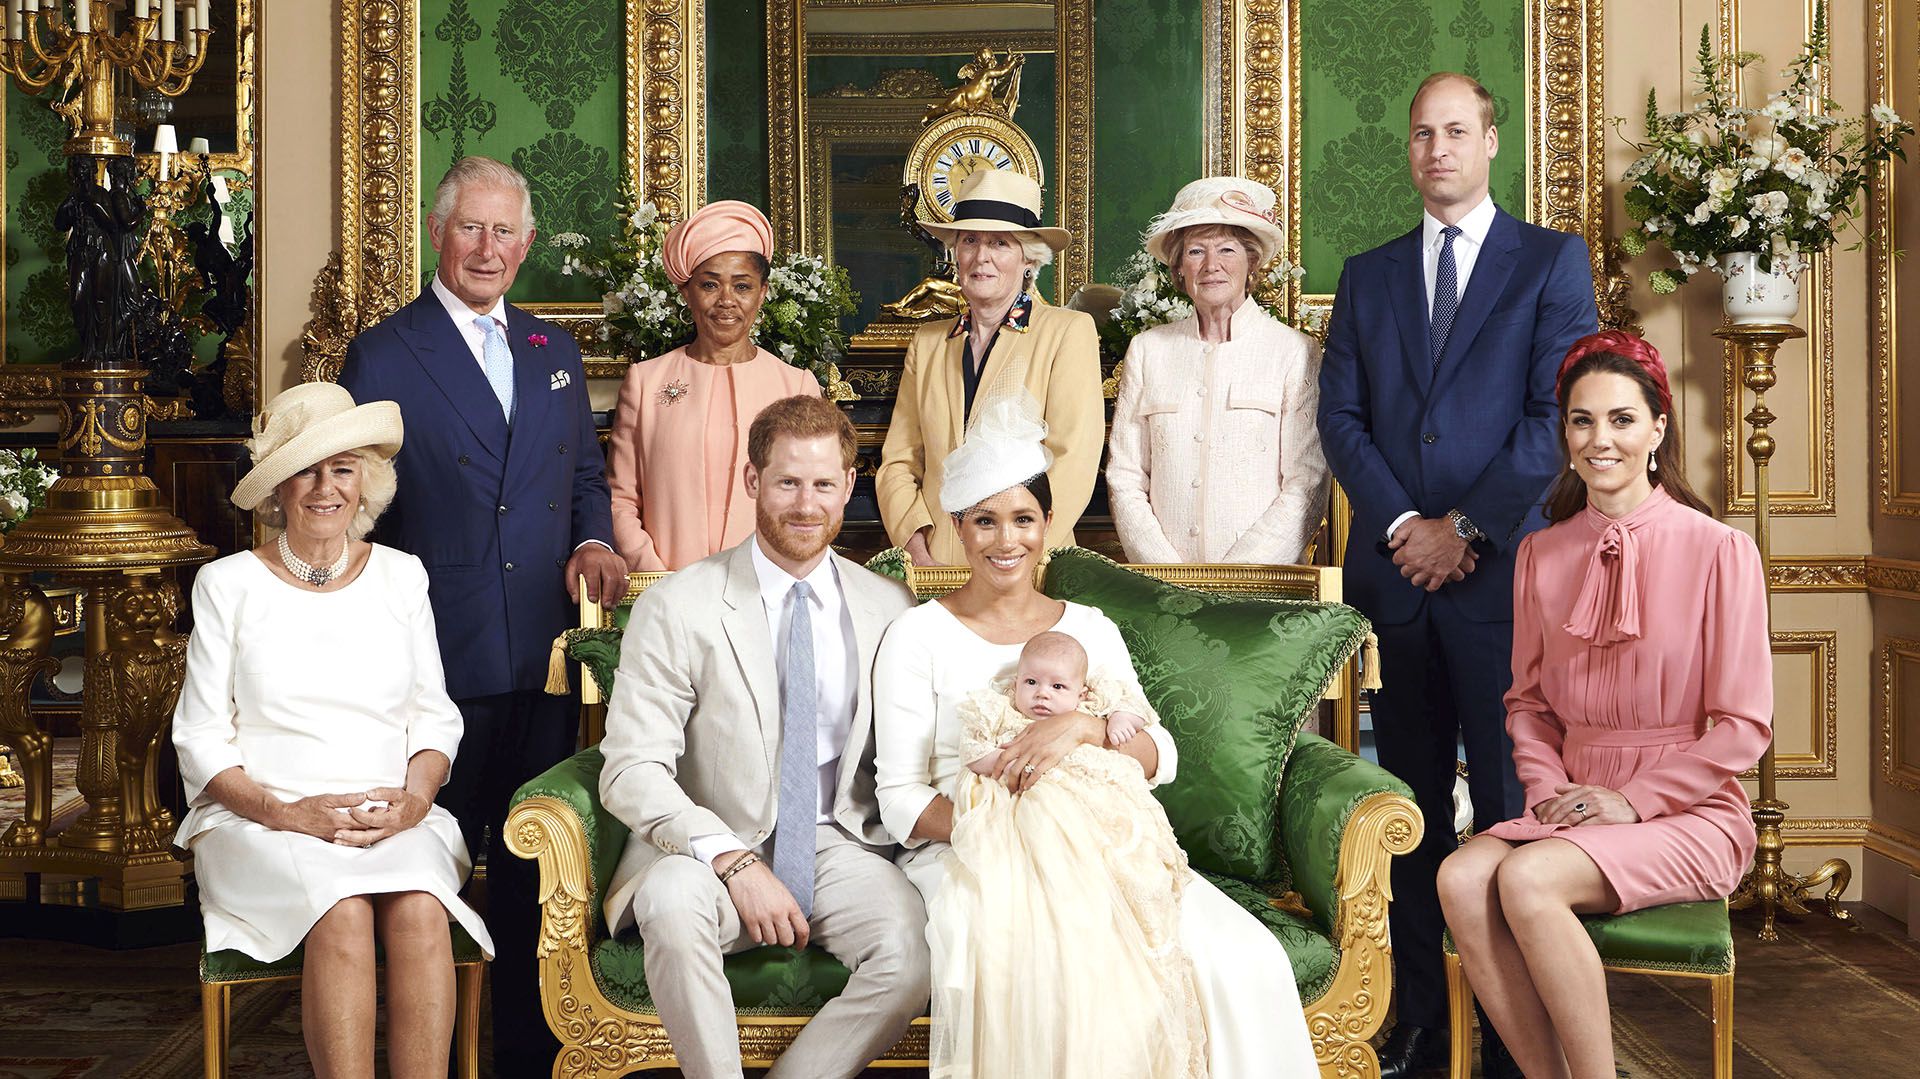 Los títulos reales son decididos por la reina Isabel II. George, Charlotte y Louis, los hijos de los duques de Cambridge, recibieron esos honores por parte de la monarca